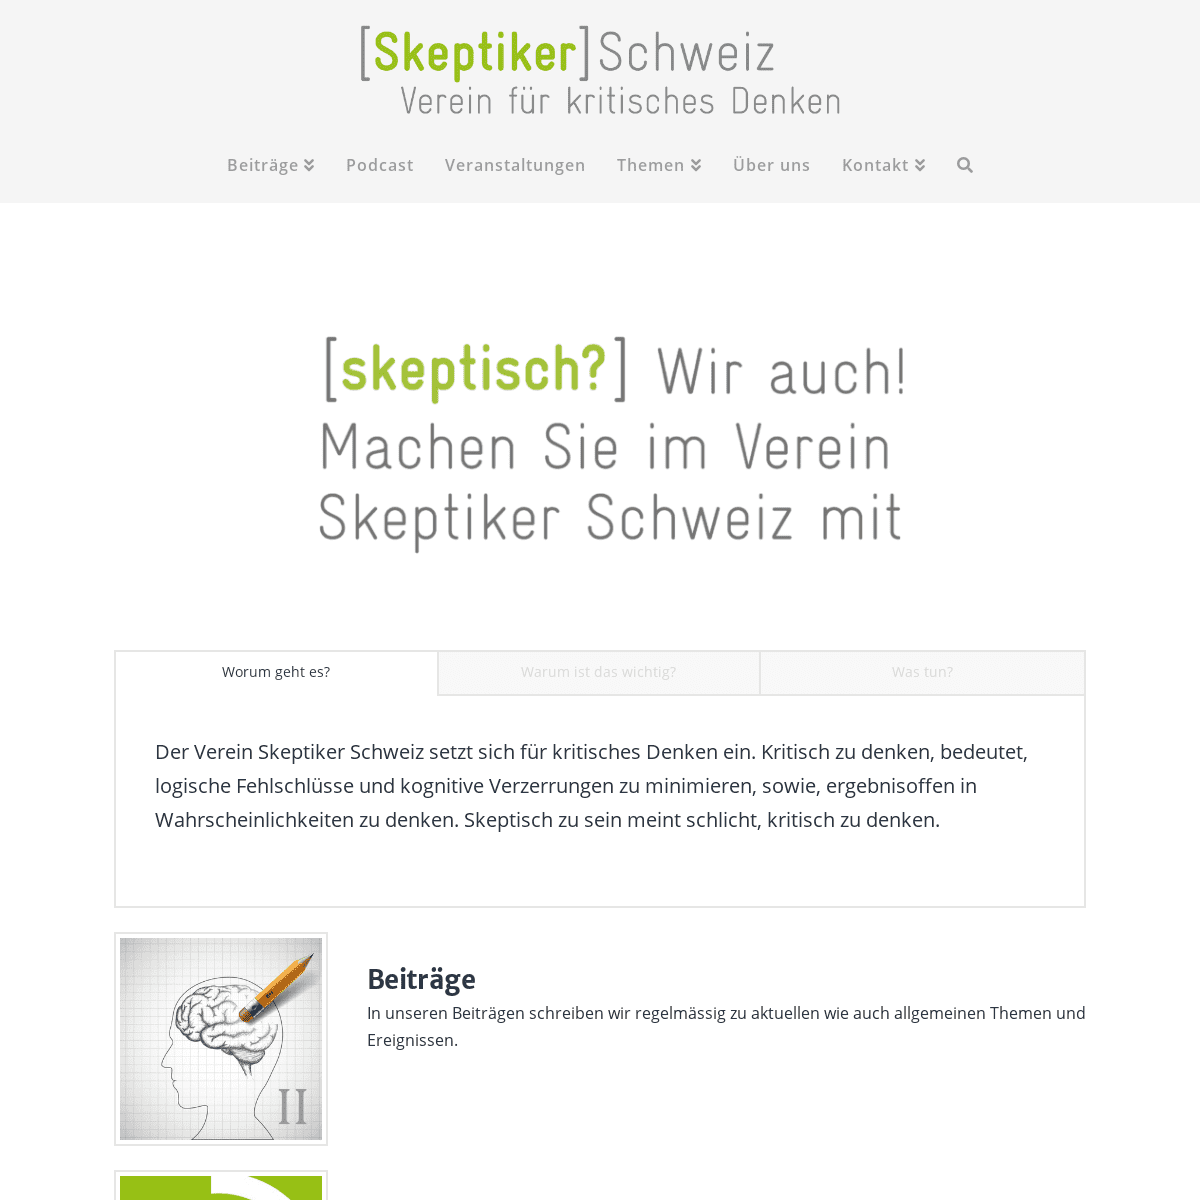 Home - Skeptiker Schweiz